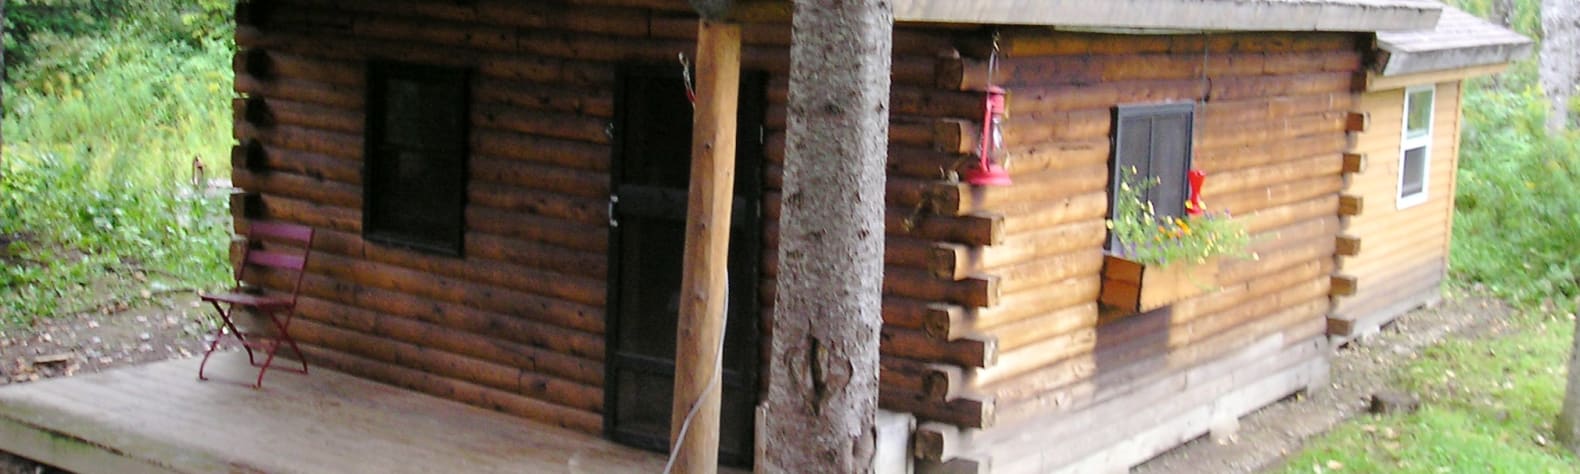 Riverbend Cabin and Sauna